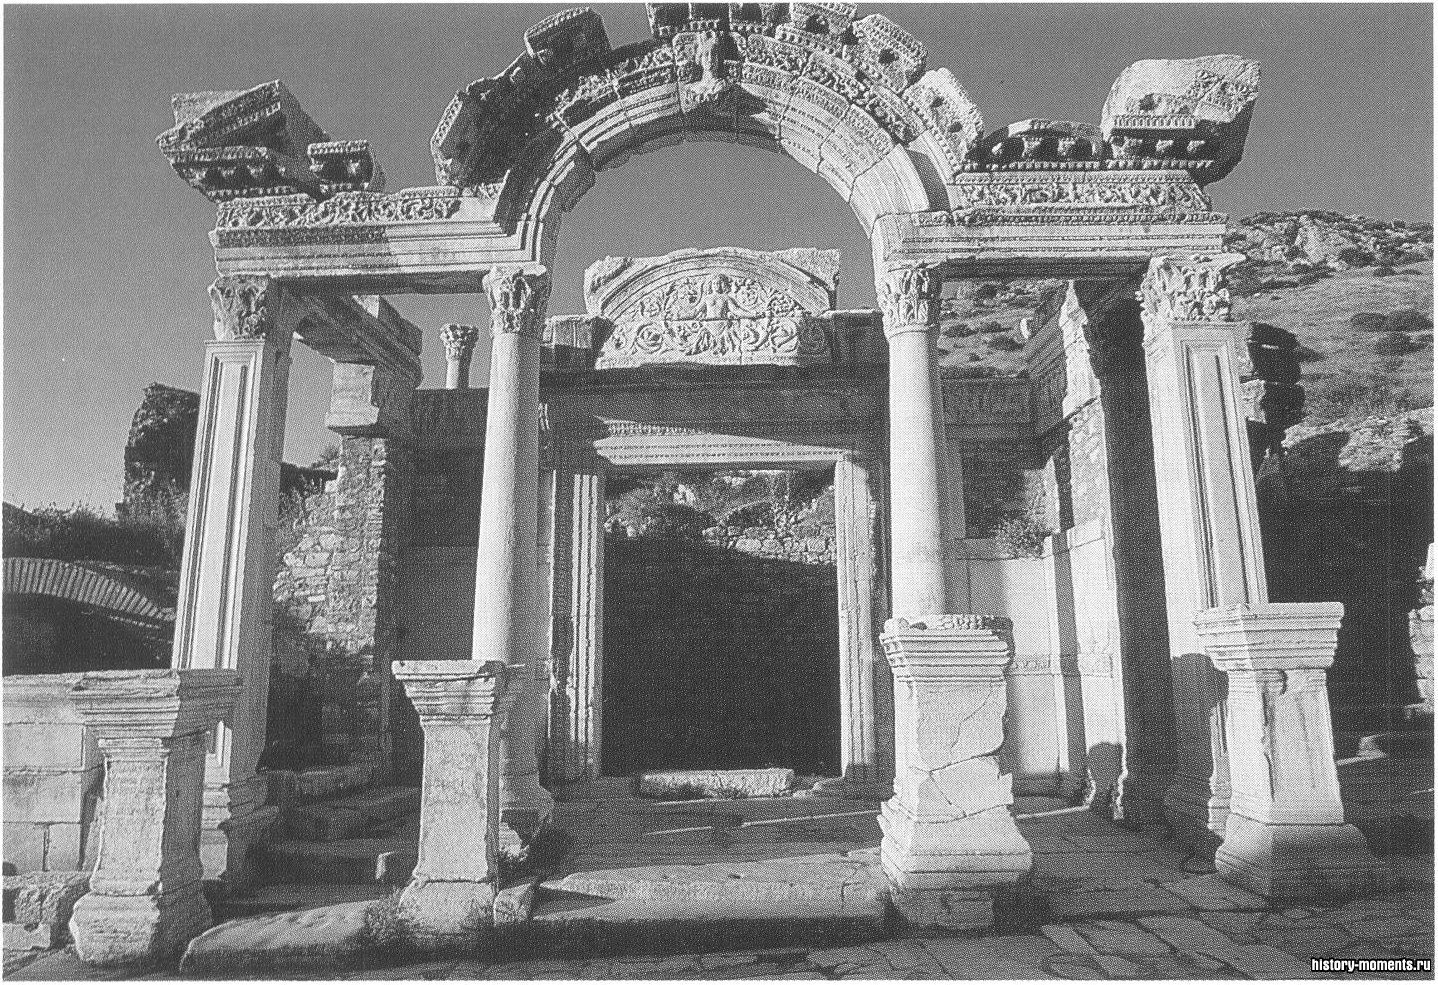 Эфес — один из крупнейших в мире археологических памятников. Храм Адриана с изящными коринфскими колоннами выстроен в 118 г. в честь этого римского императора, богини Артемиды и самого города.